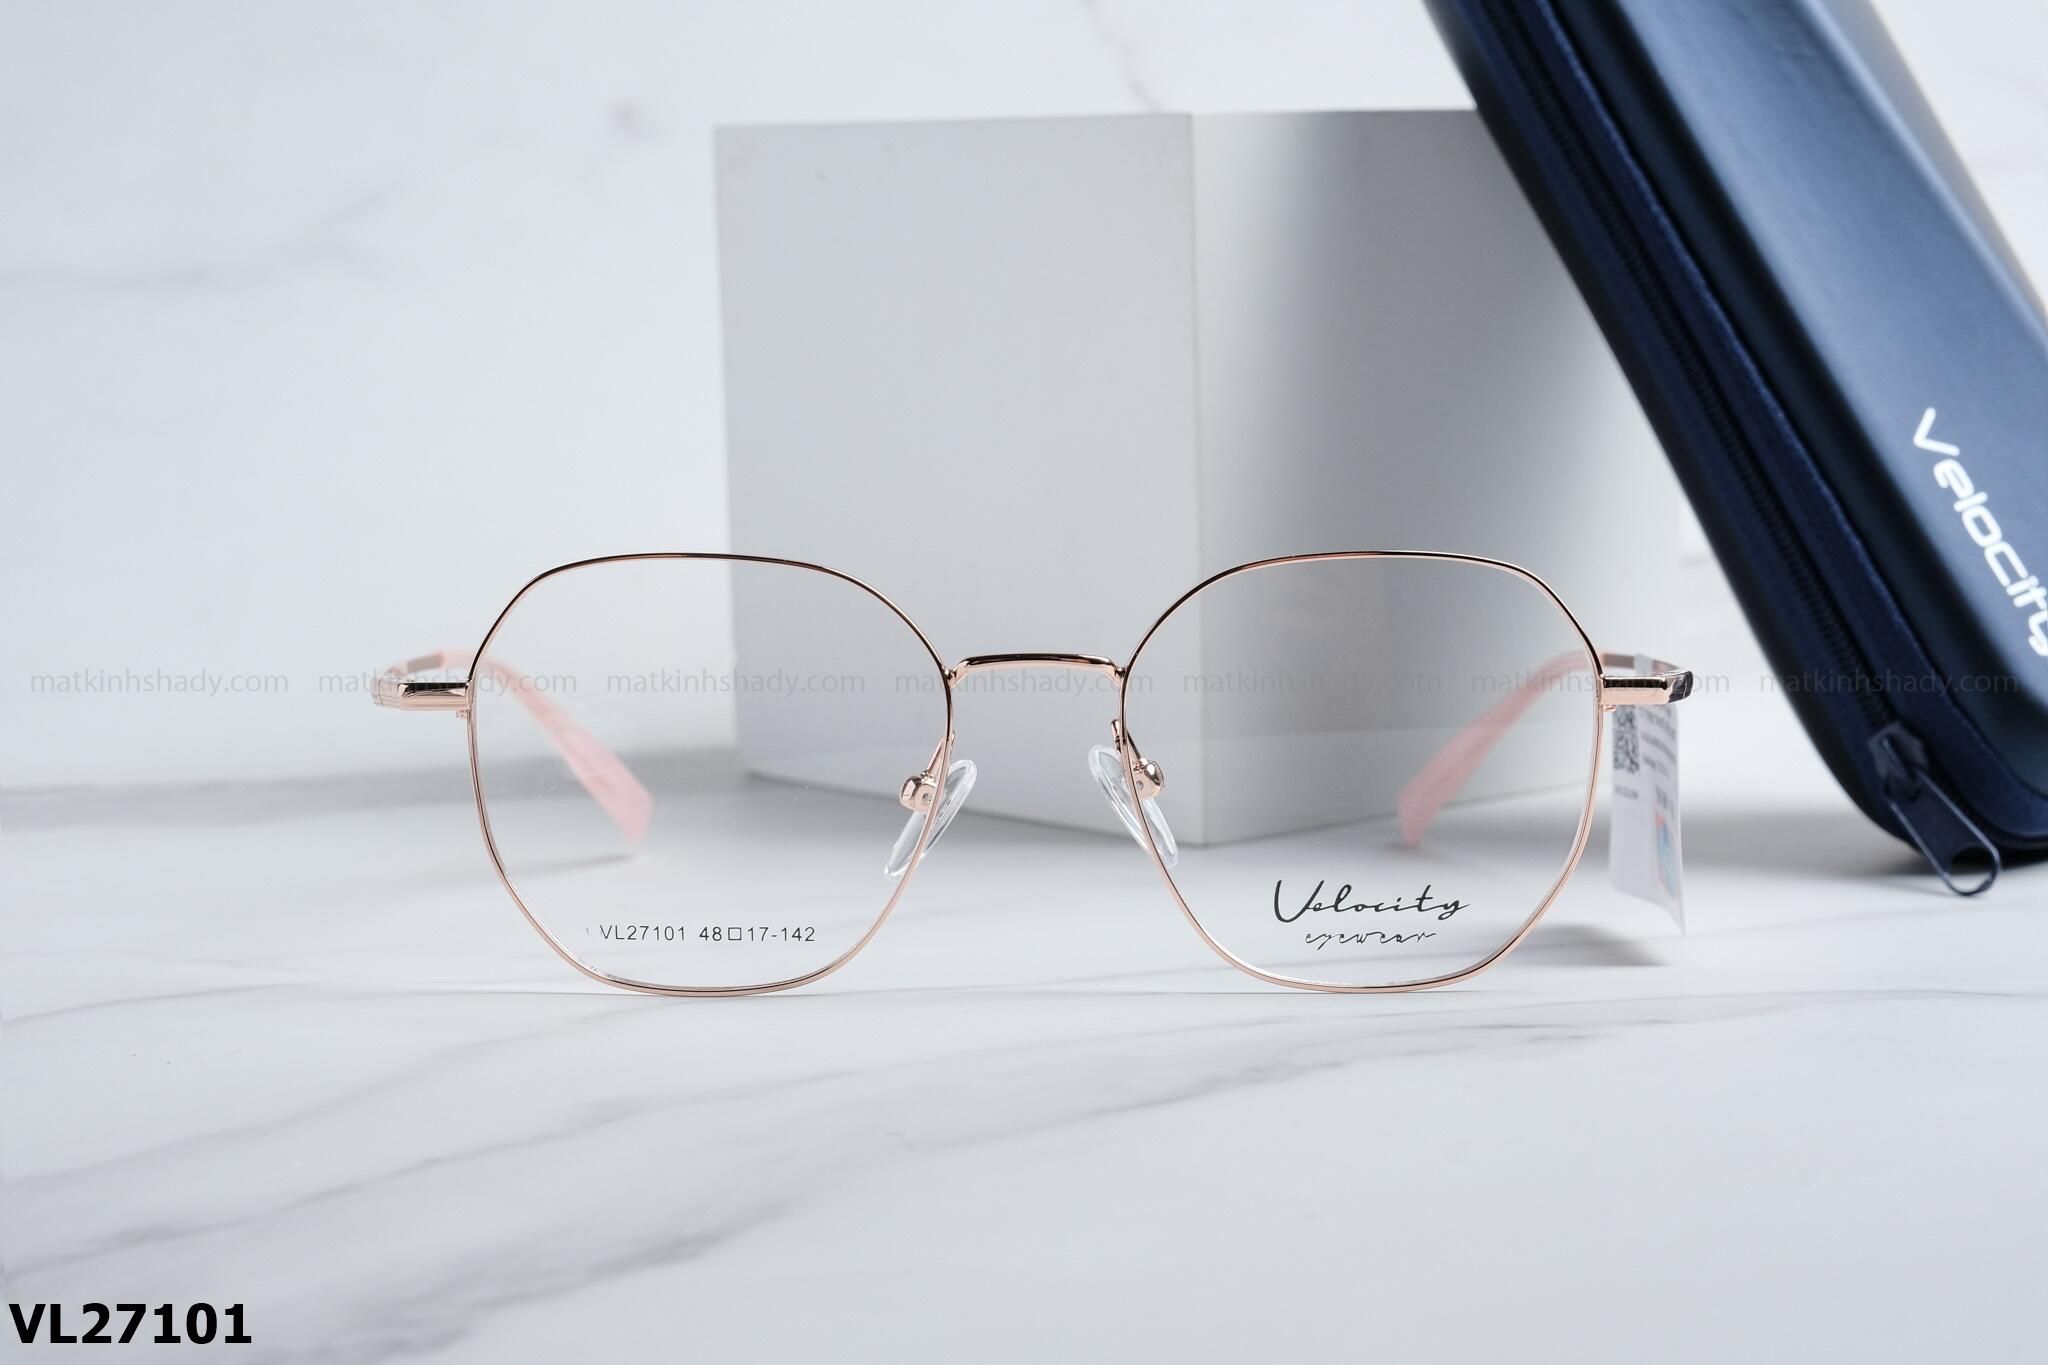  Velocity Eyewear - Glasses - VL27101 